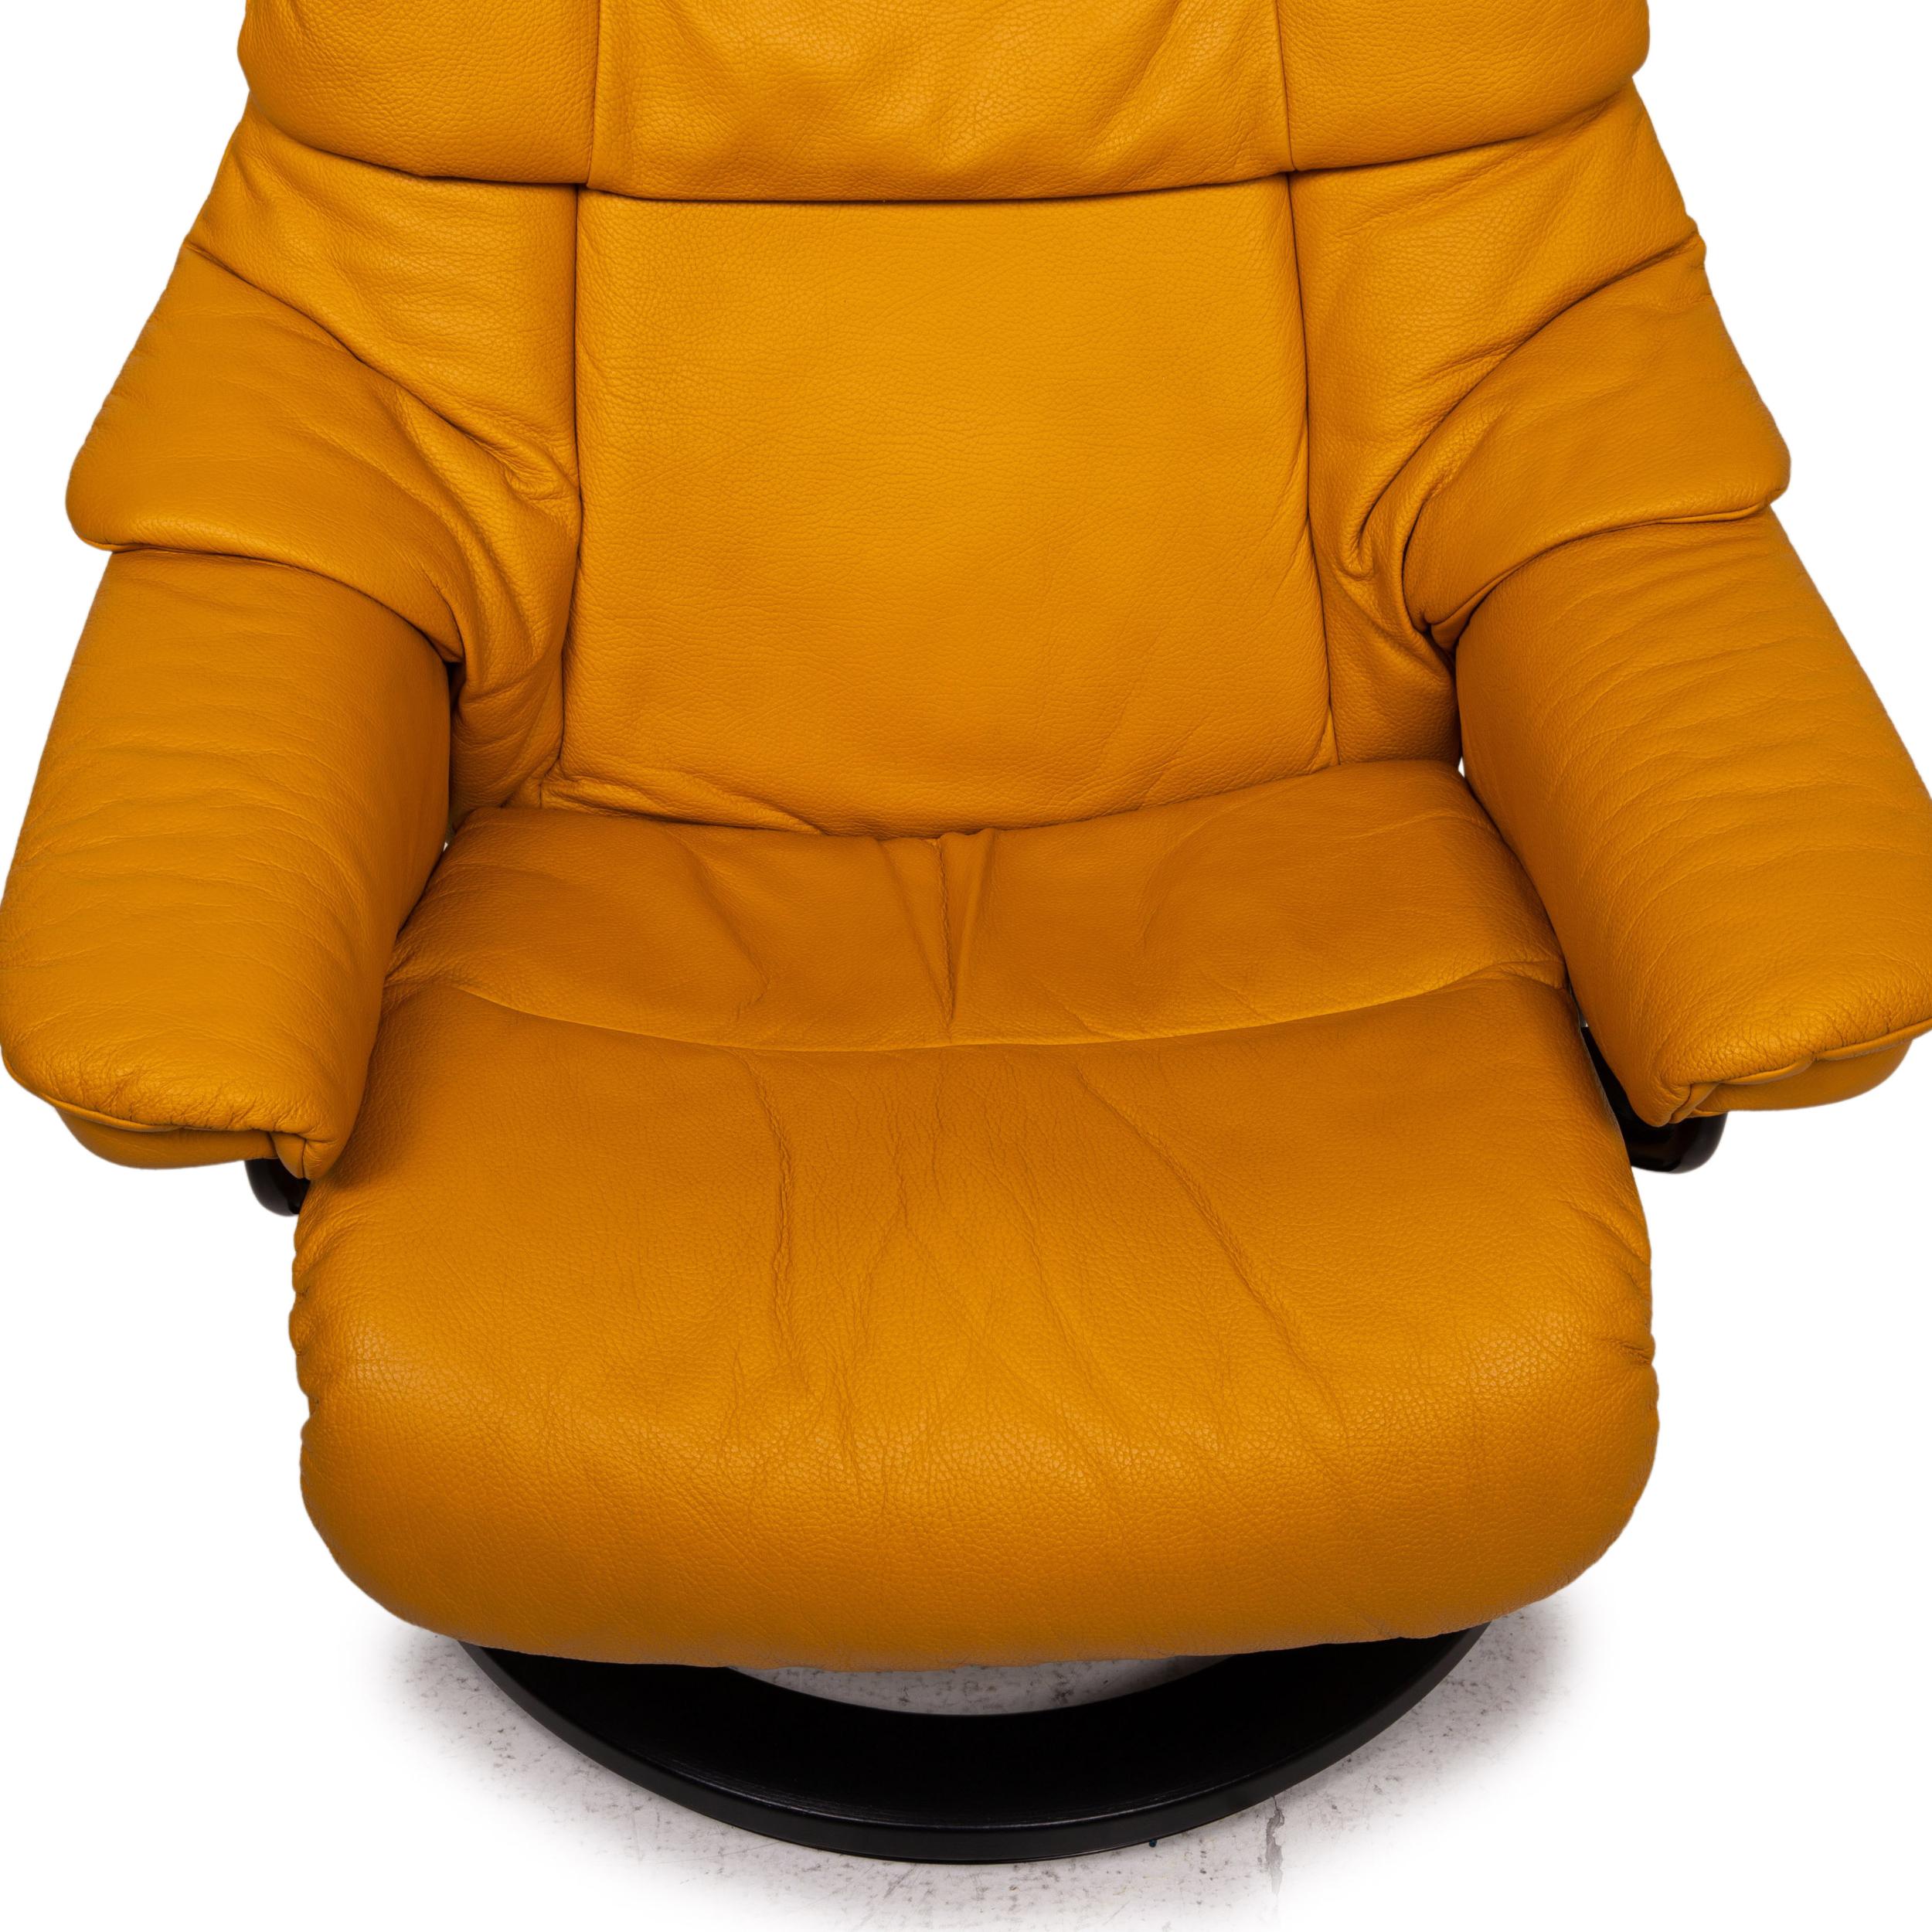 mustard yellow recliner chair